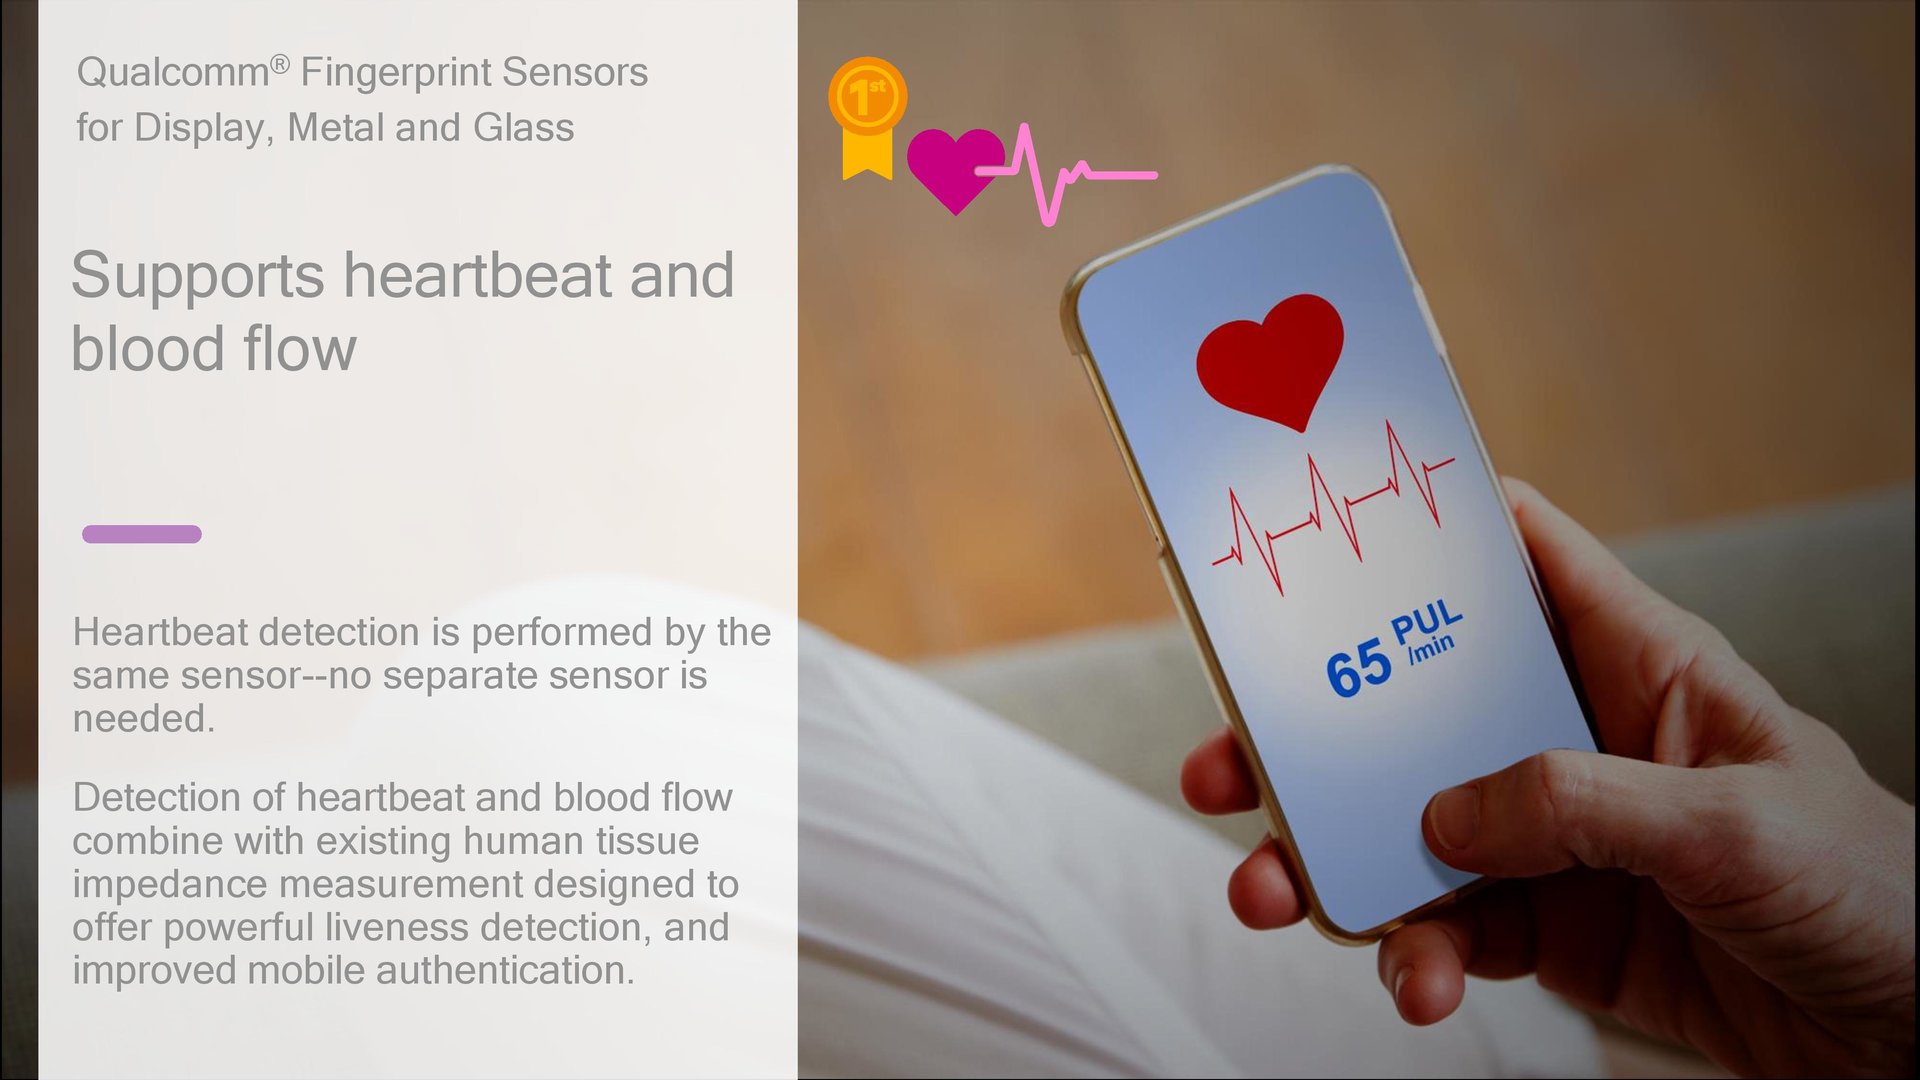 Messen der Herzfrequenz und des Blutflusses über den Sensor